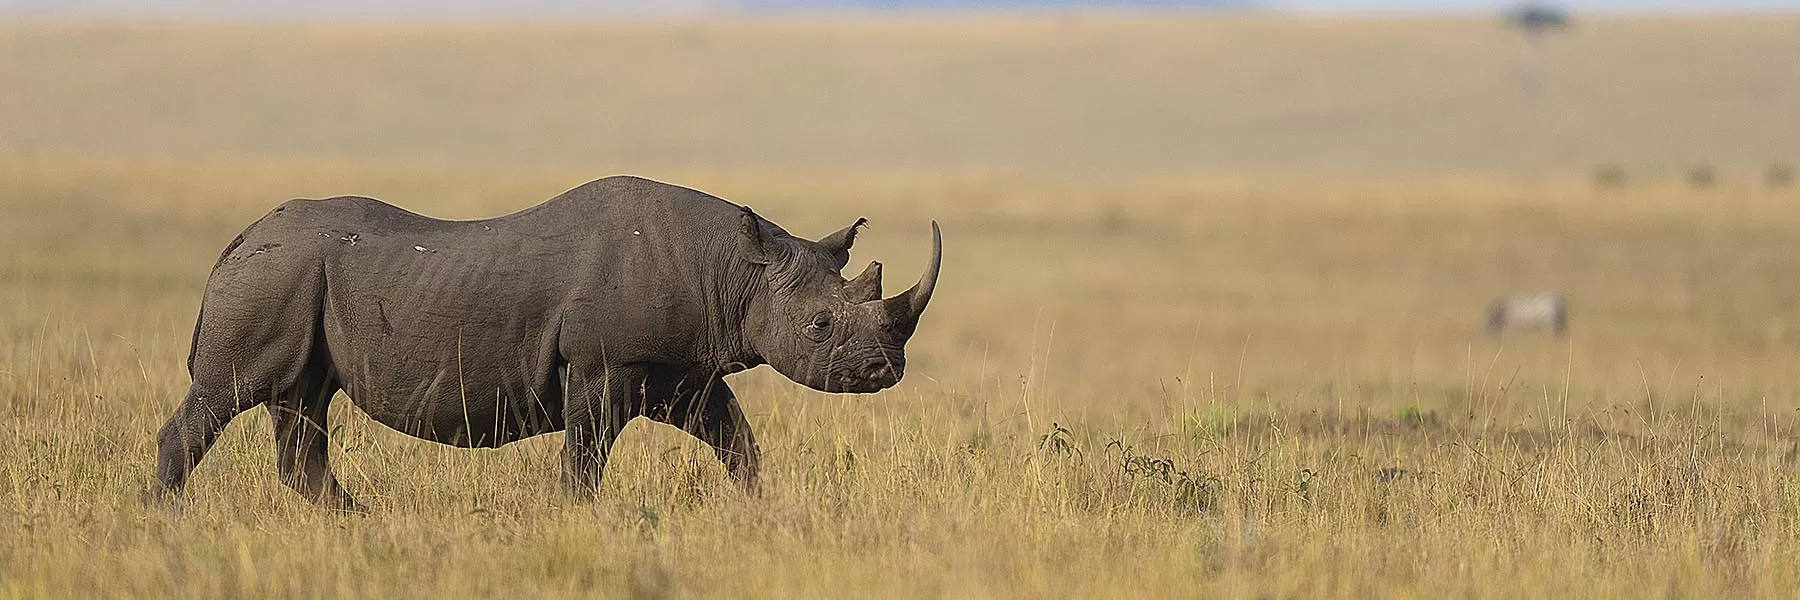 Rhino conservation of Kenya